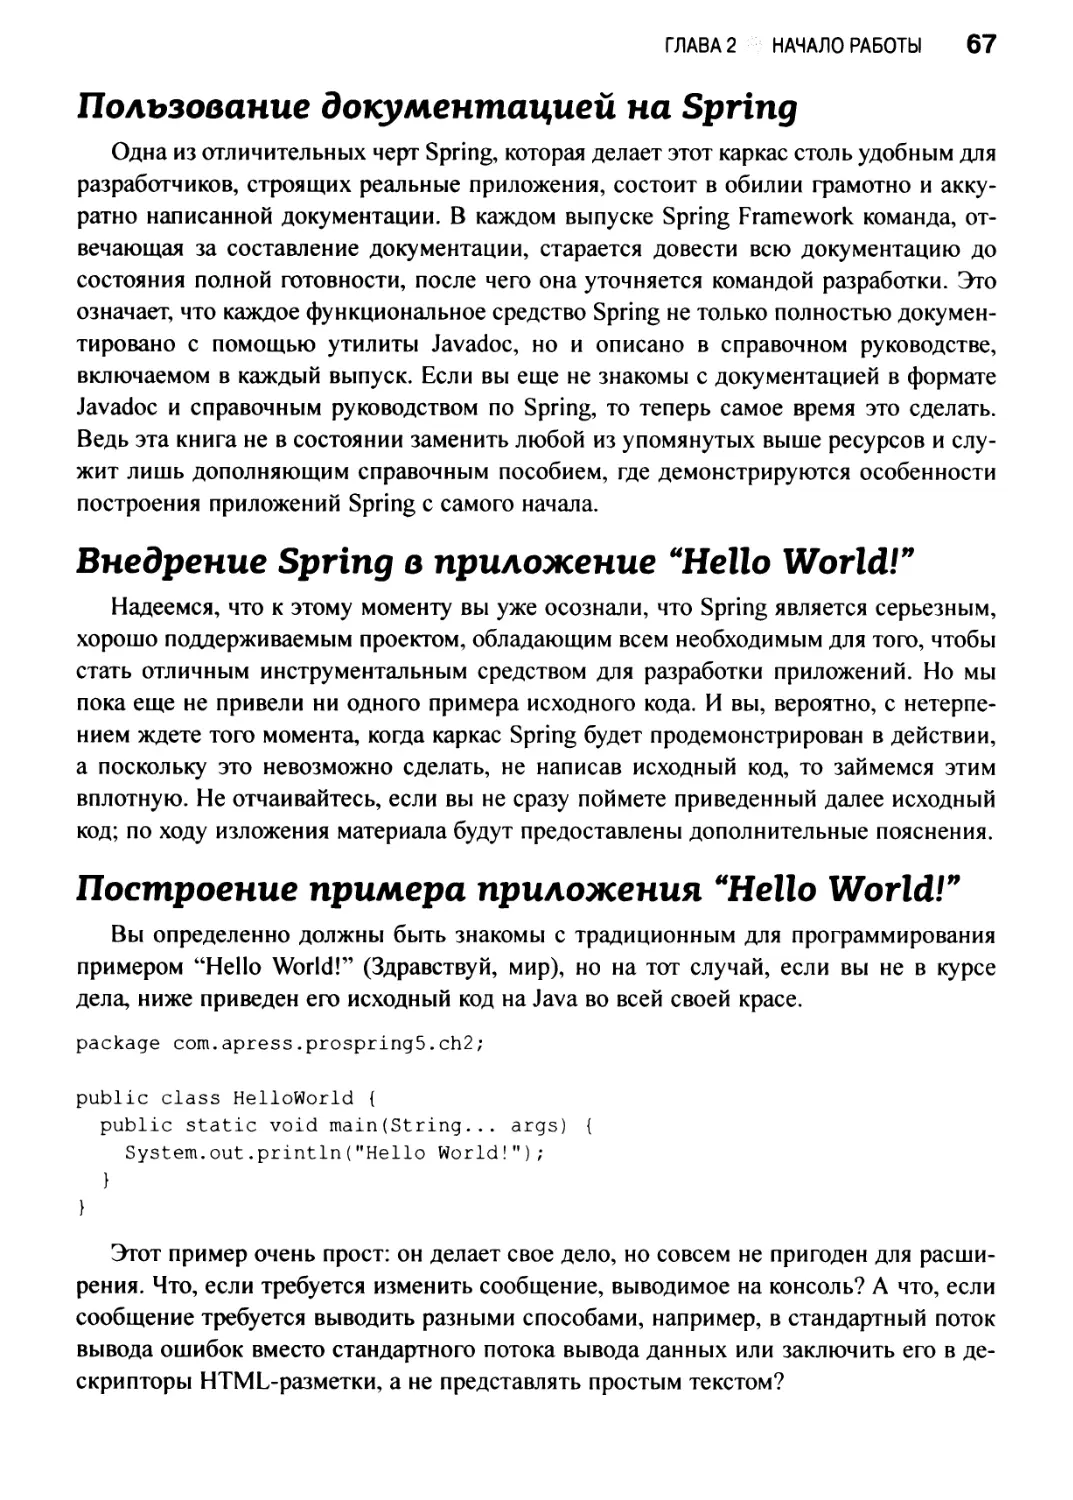 Построение примера приложения “Hello World!”